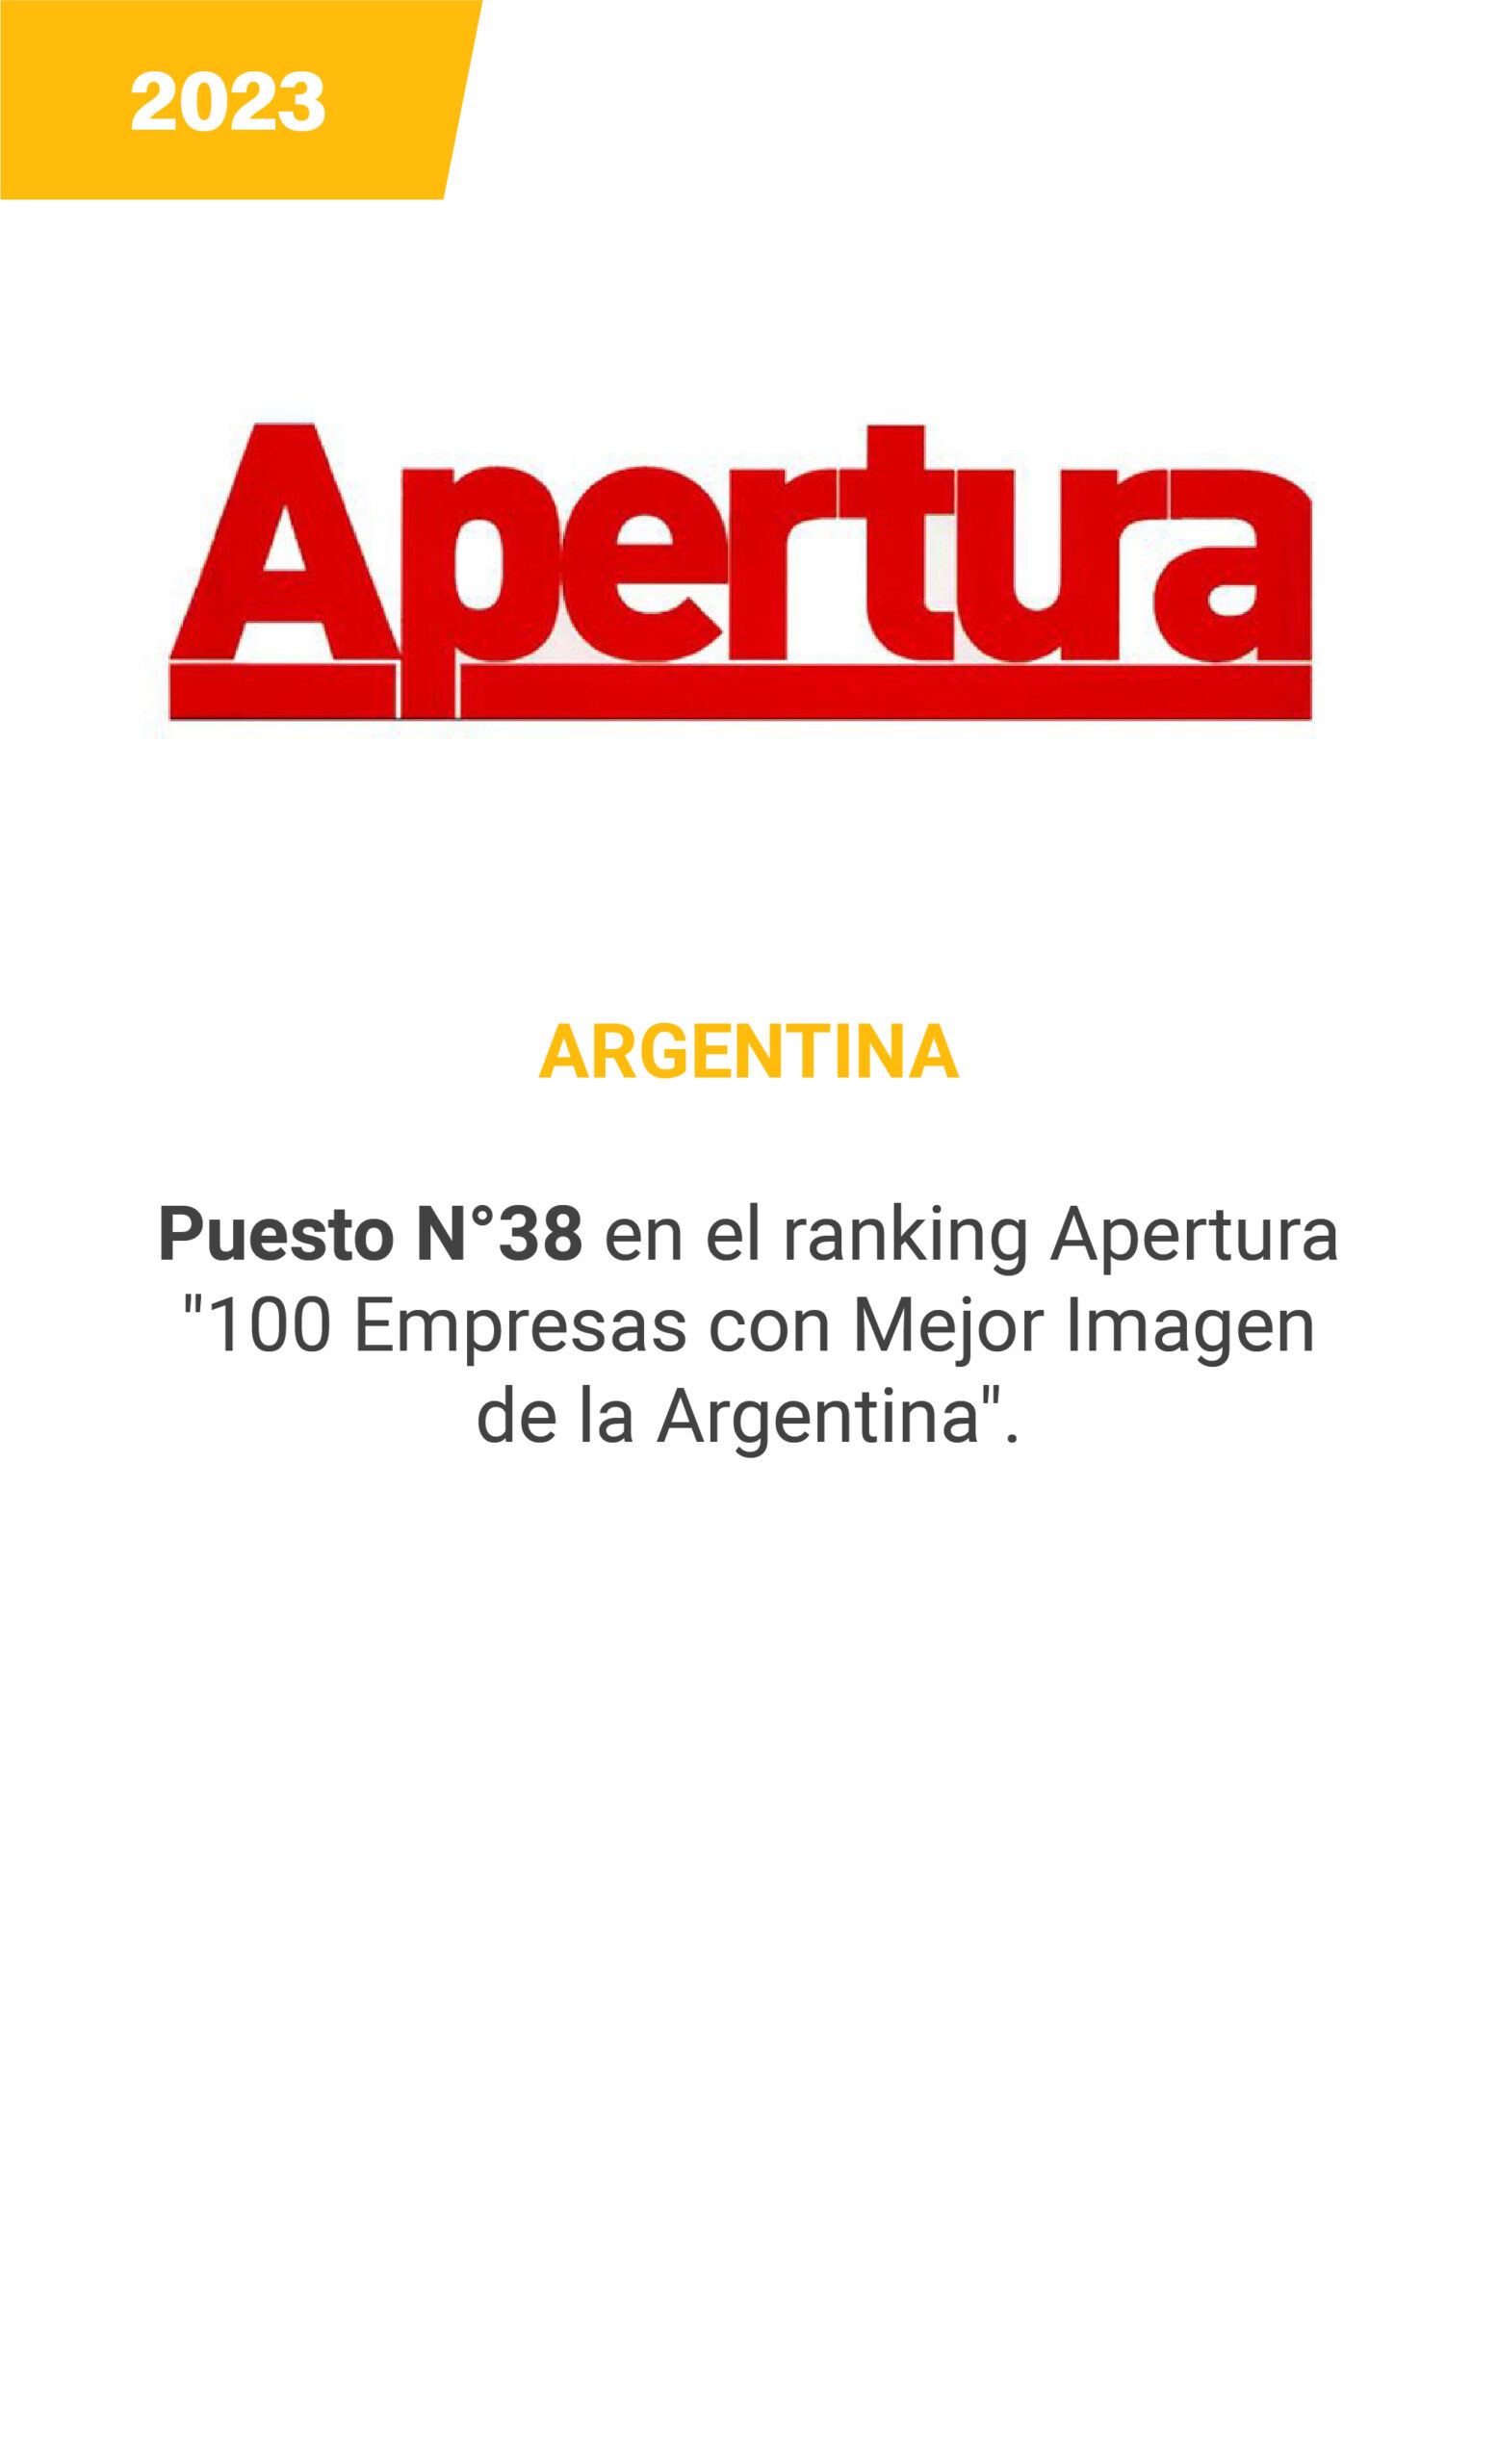 Apertura - Argentina 2023 - mobile